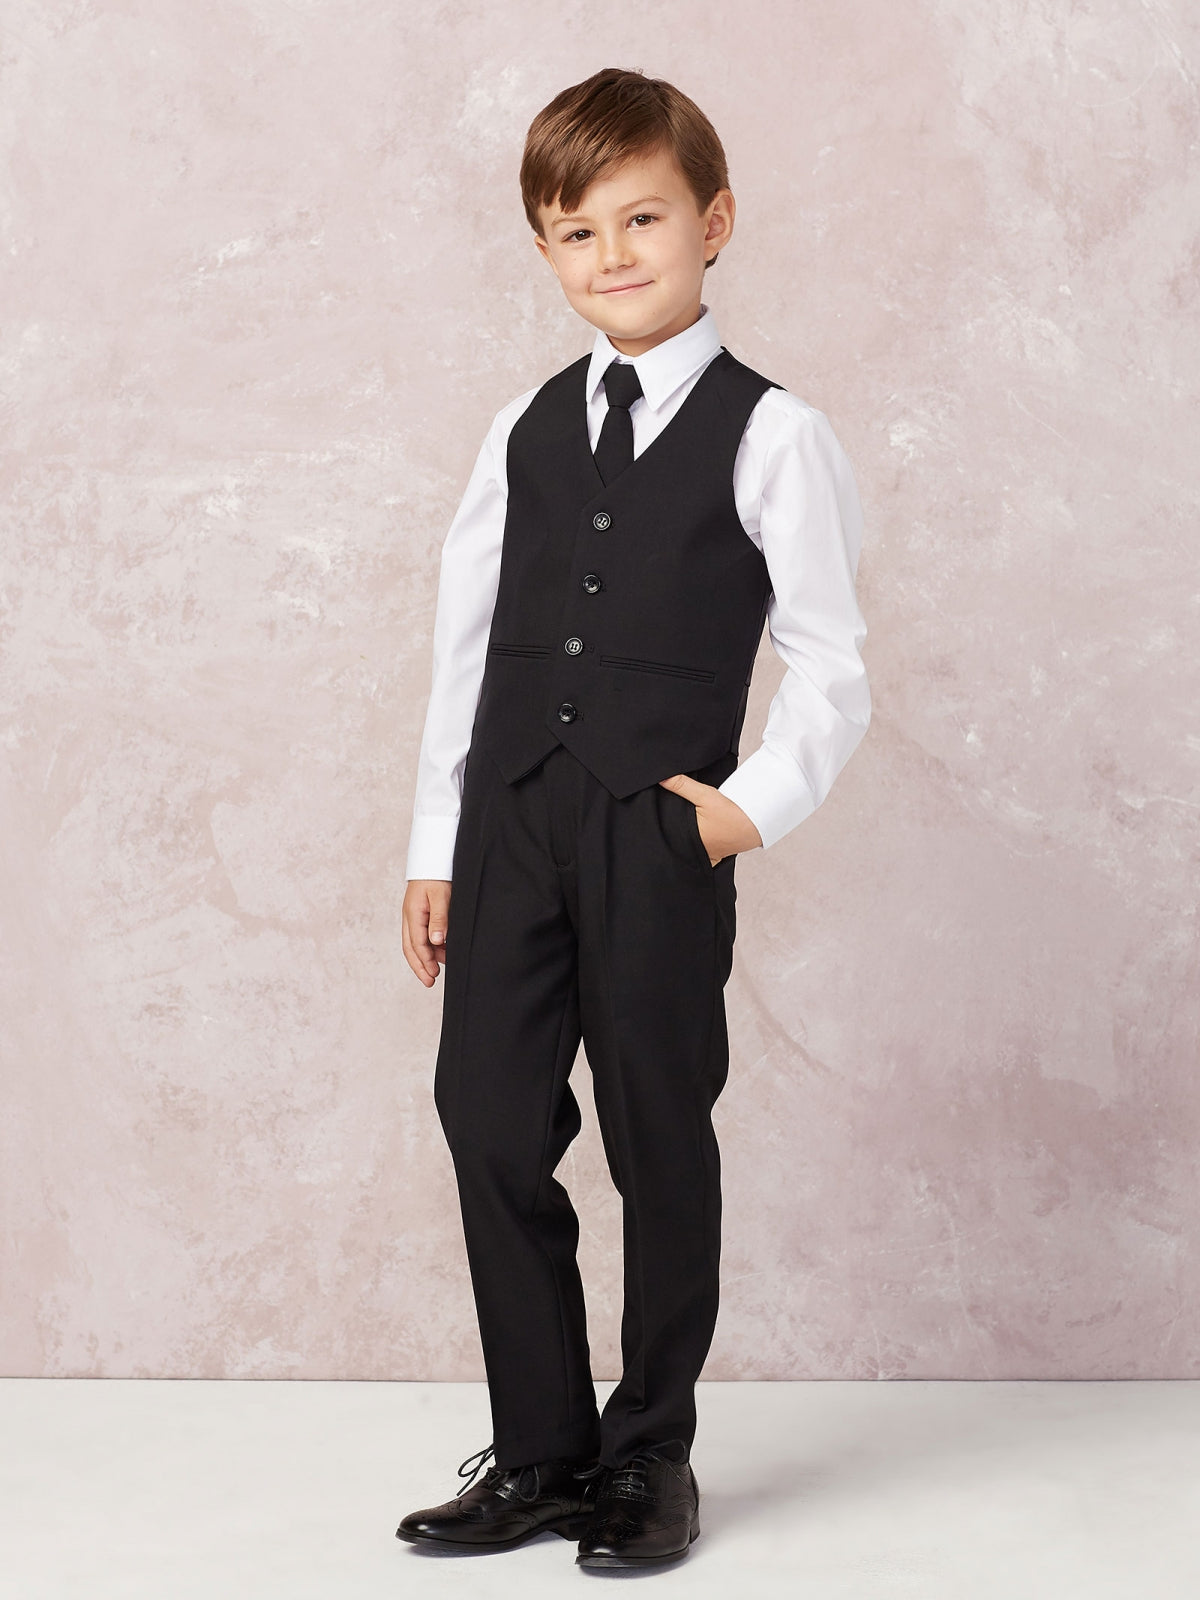 Boys Black Suits | Page Boy Suits & Wedding Suits | Suit Lab